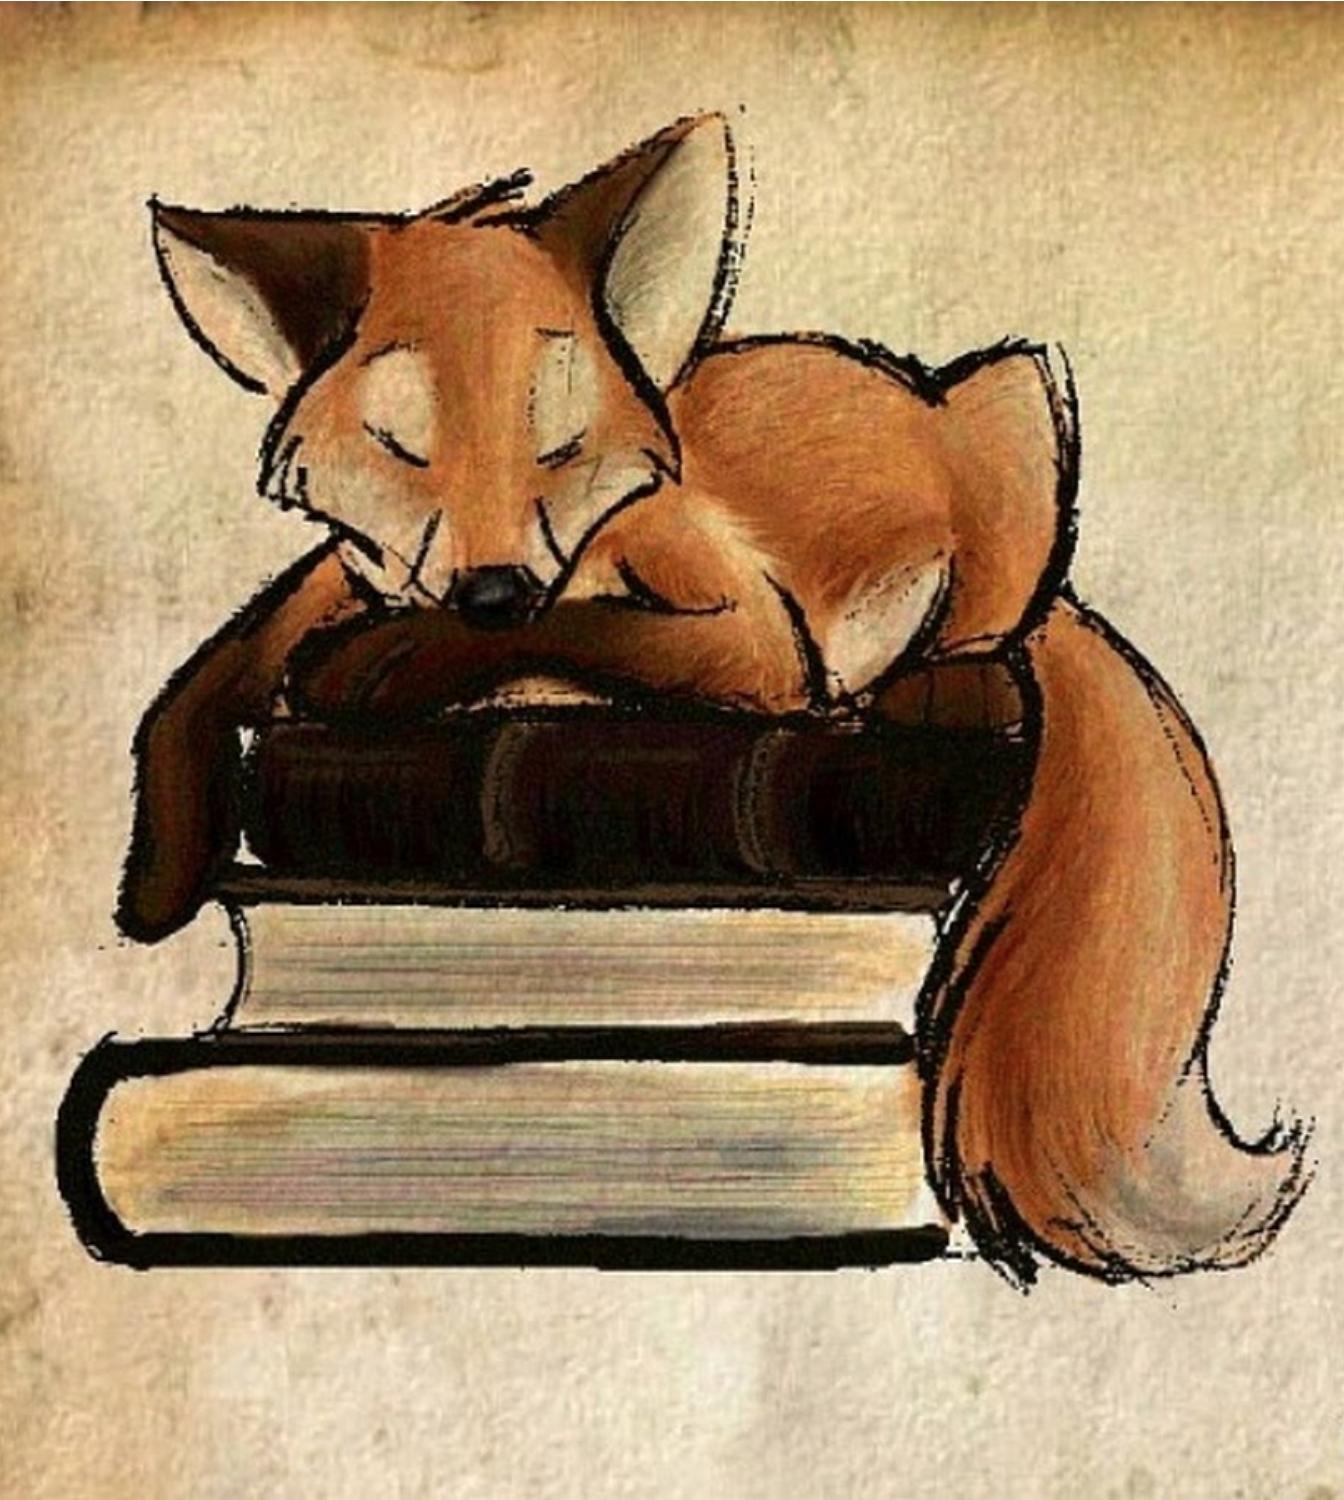 Fox on books